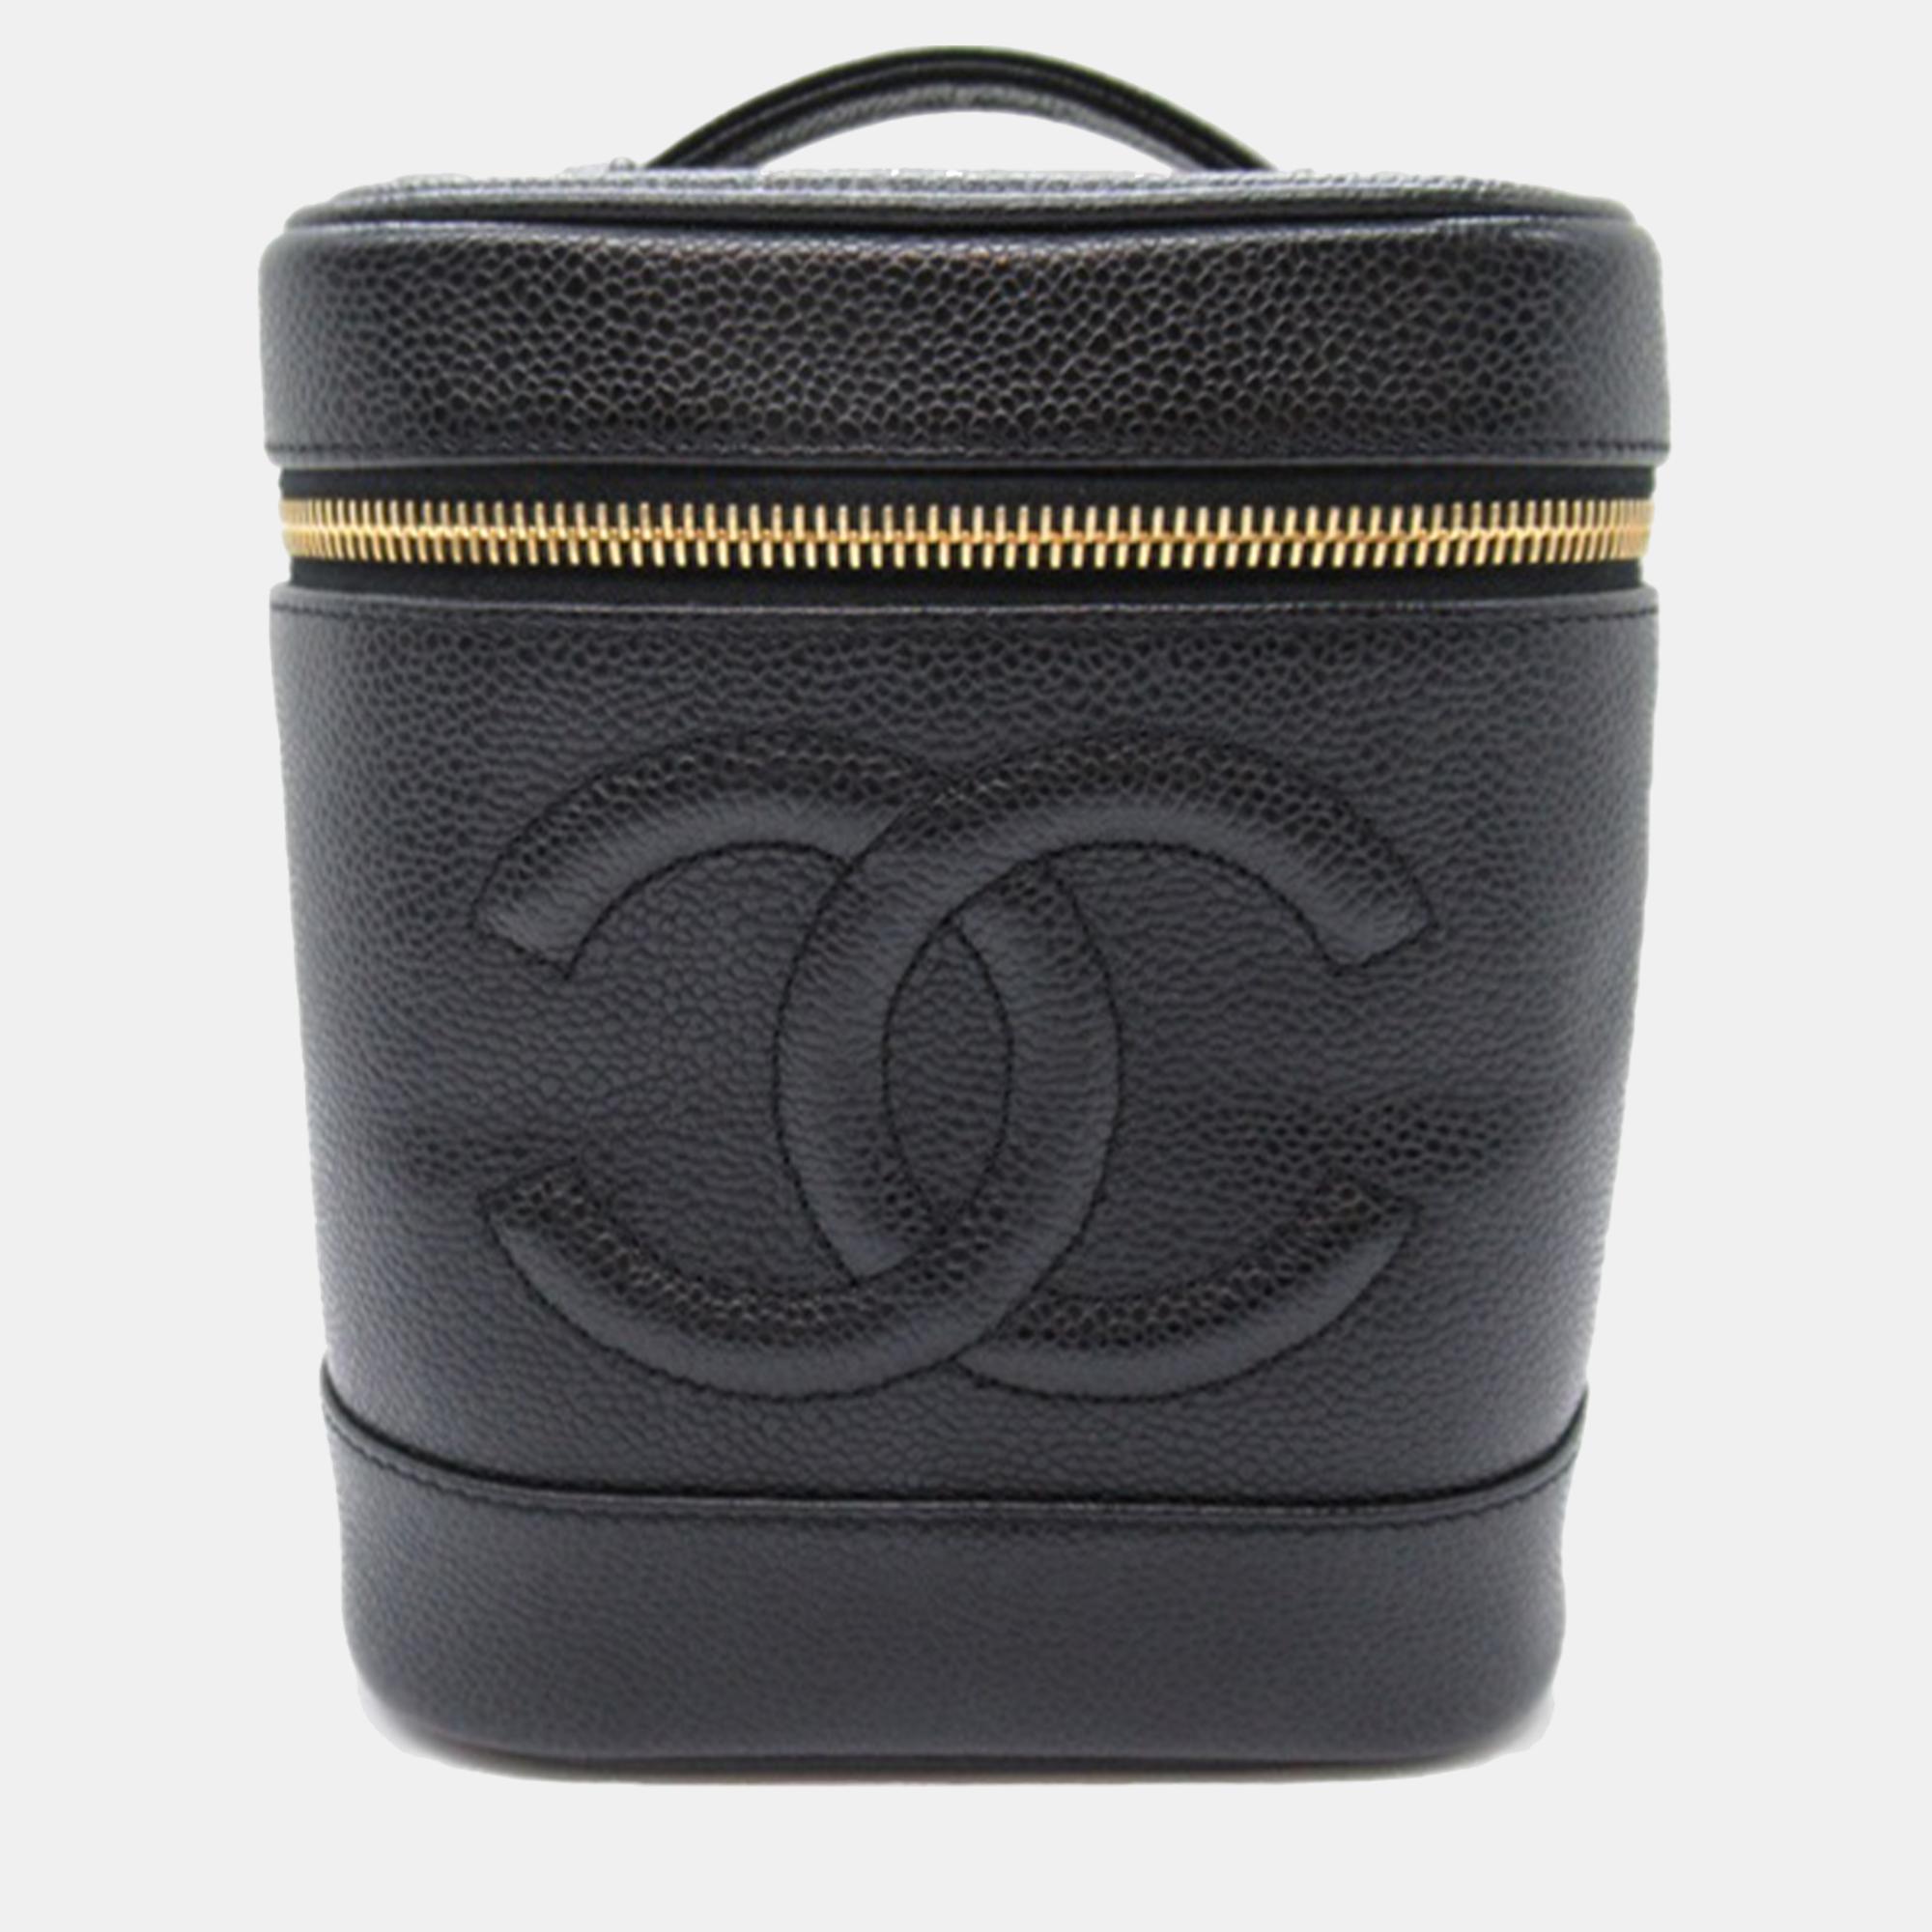 Chanel black cc caviar vanity case